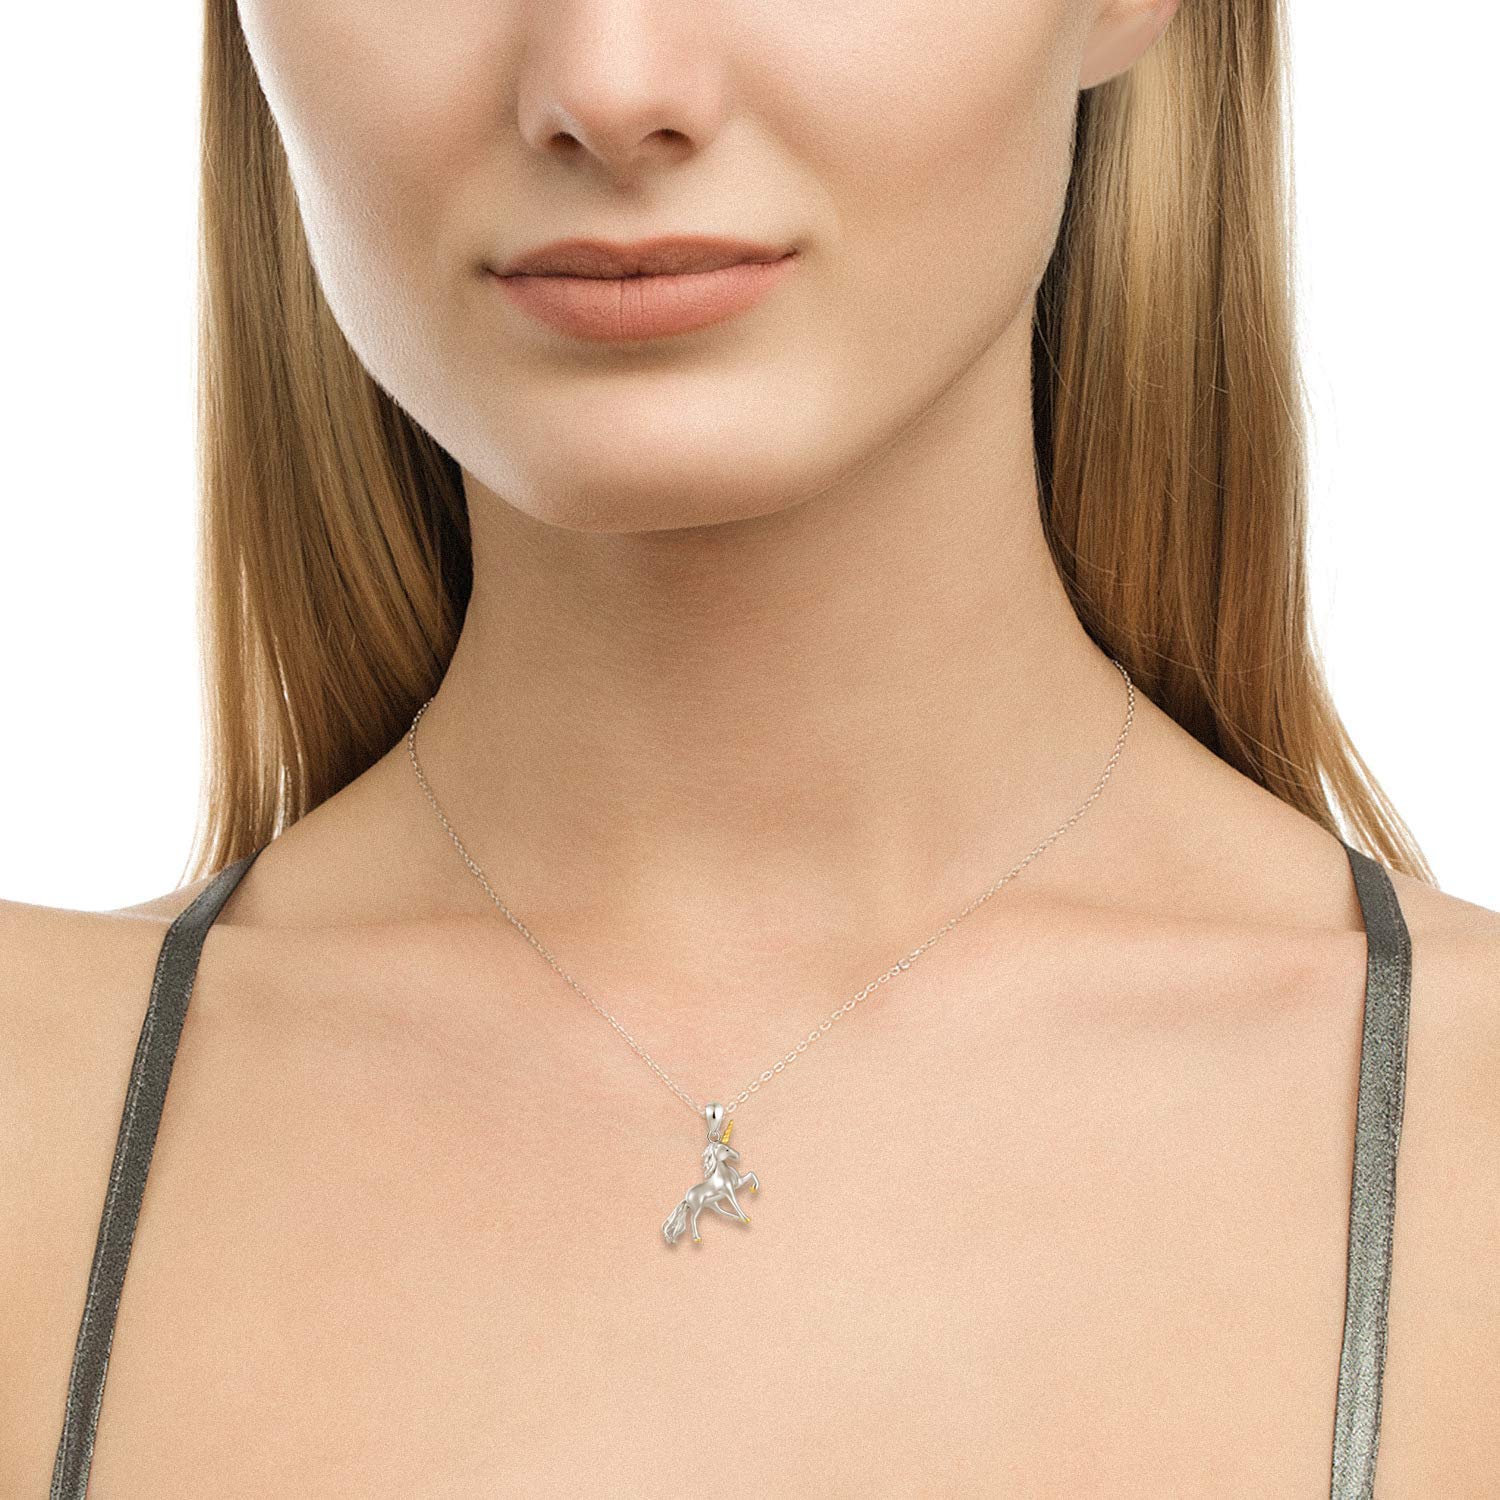 Silver unicorn necklace